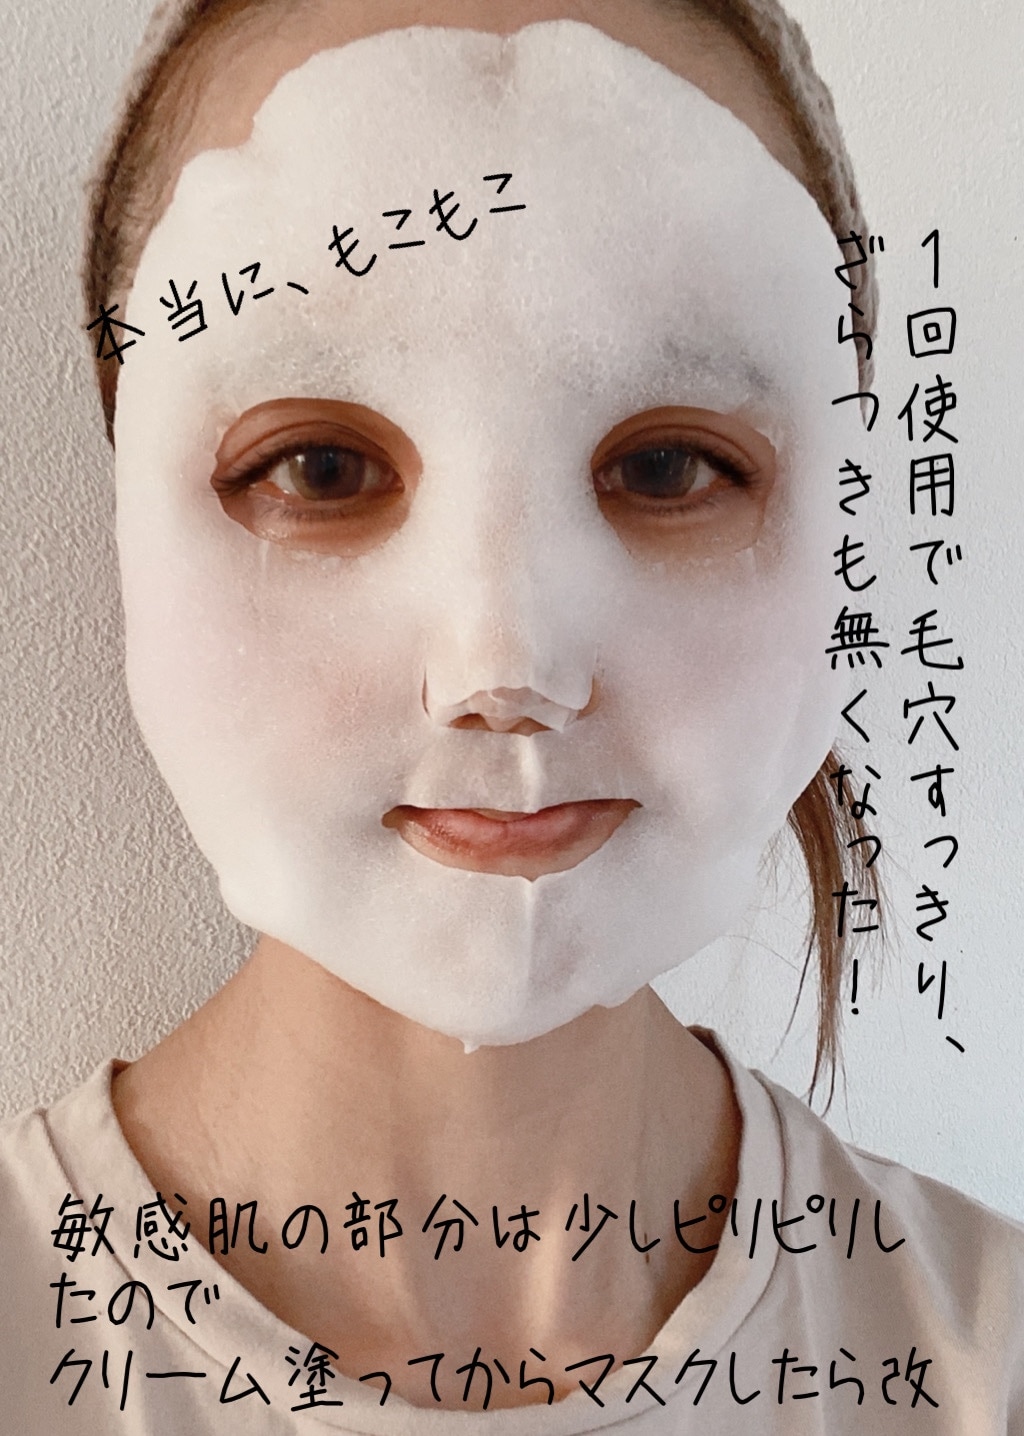 UNISEX S/M LITS ♡もこもこ白泡マスク♡11枚セット♡ - 通販